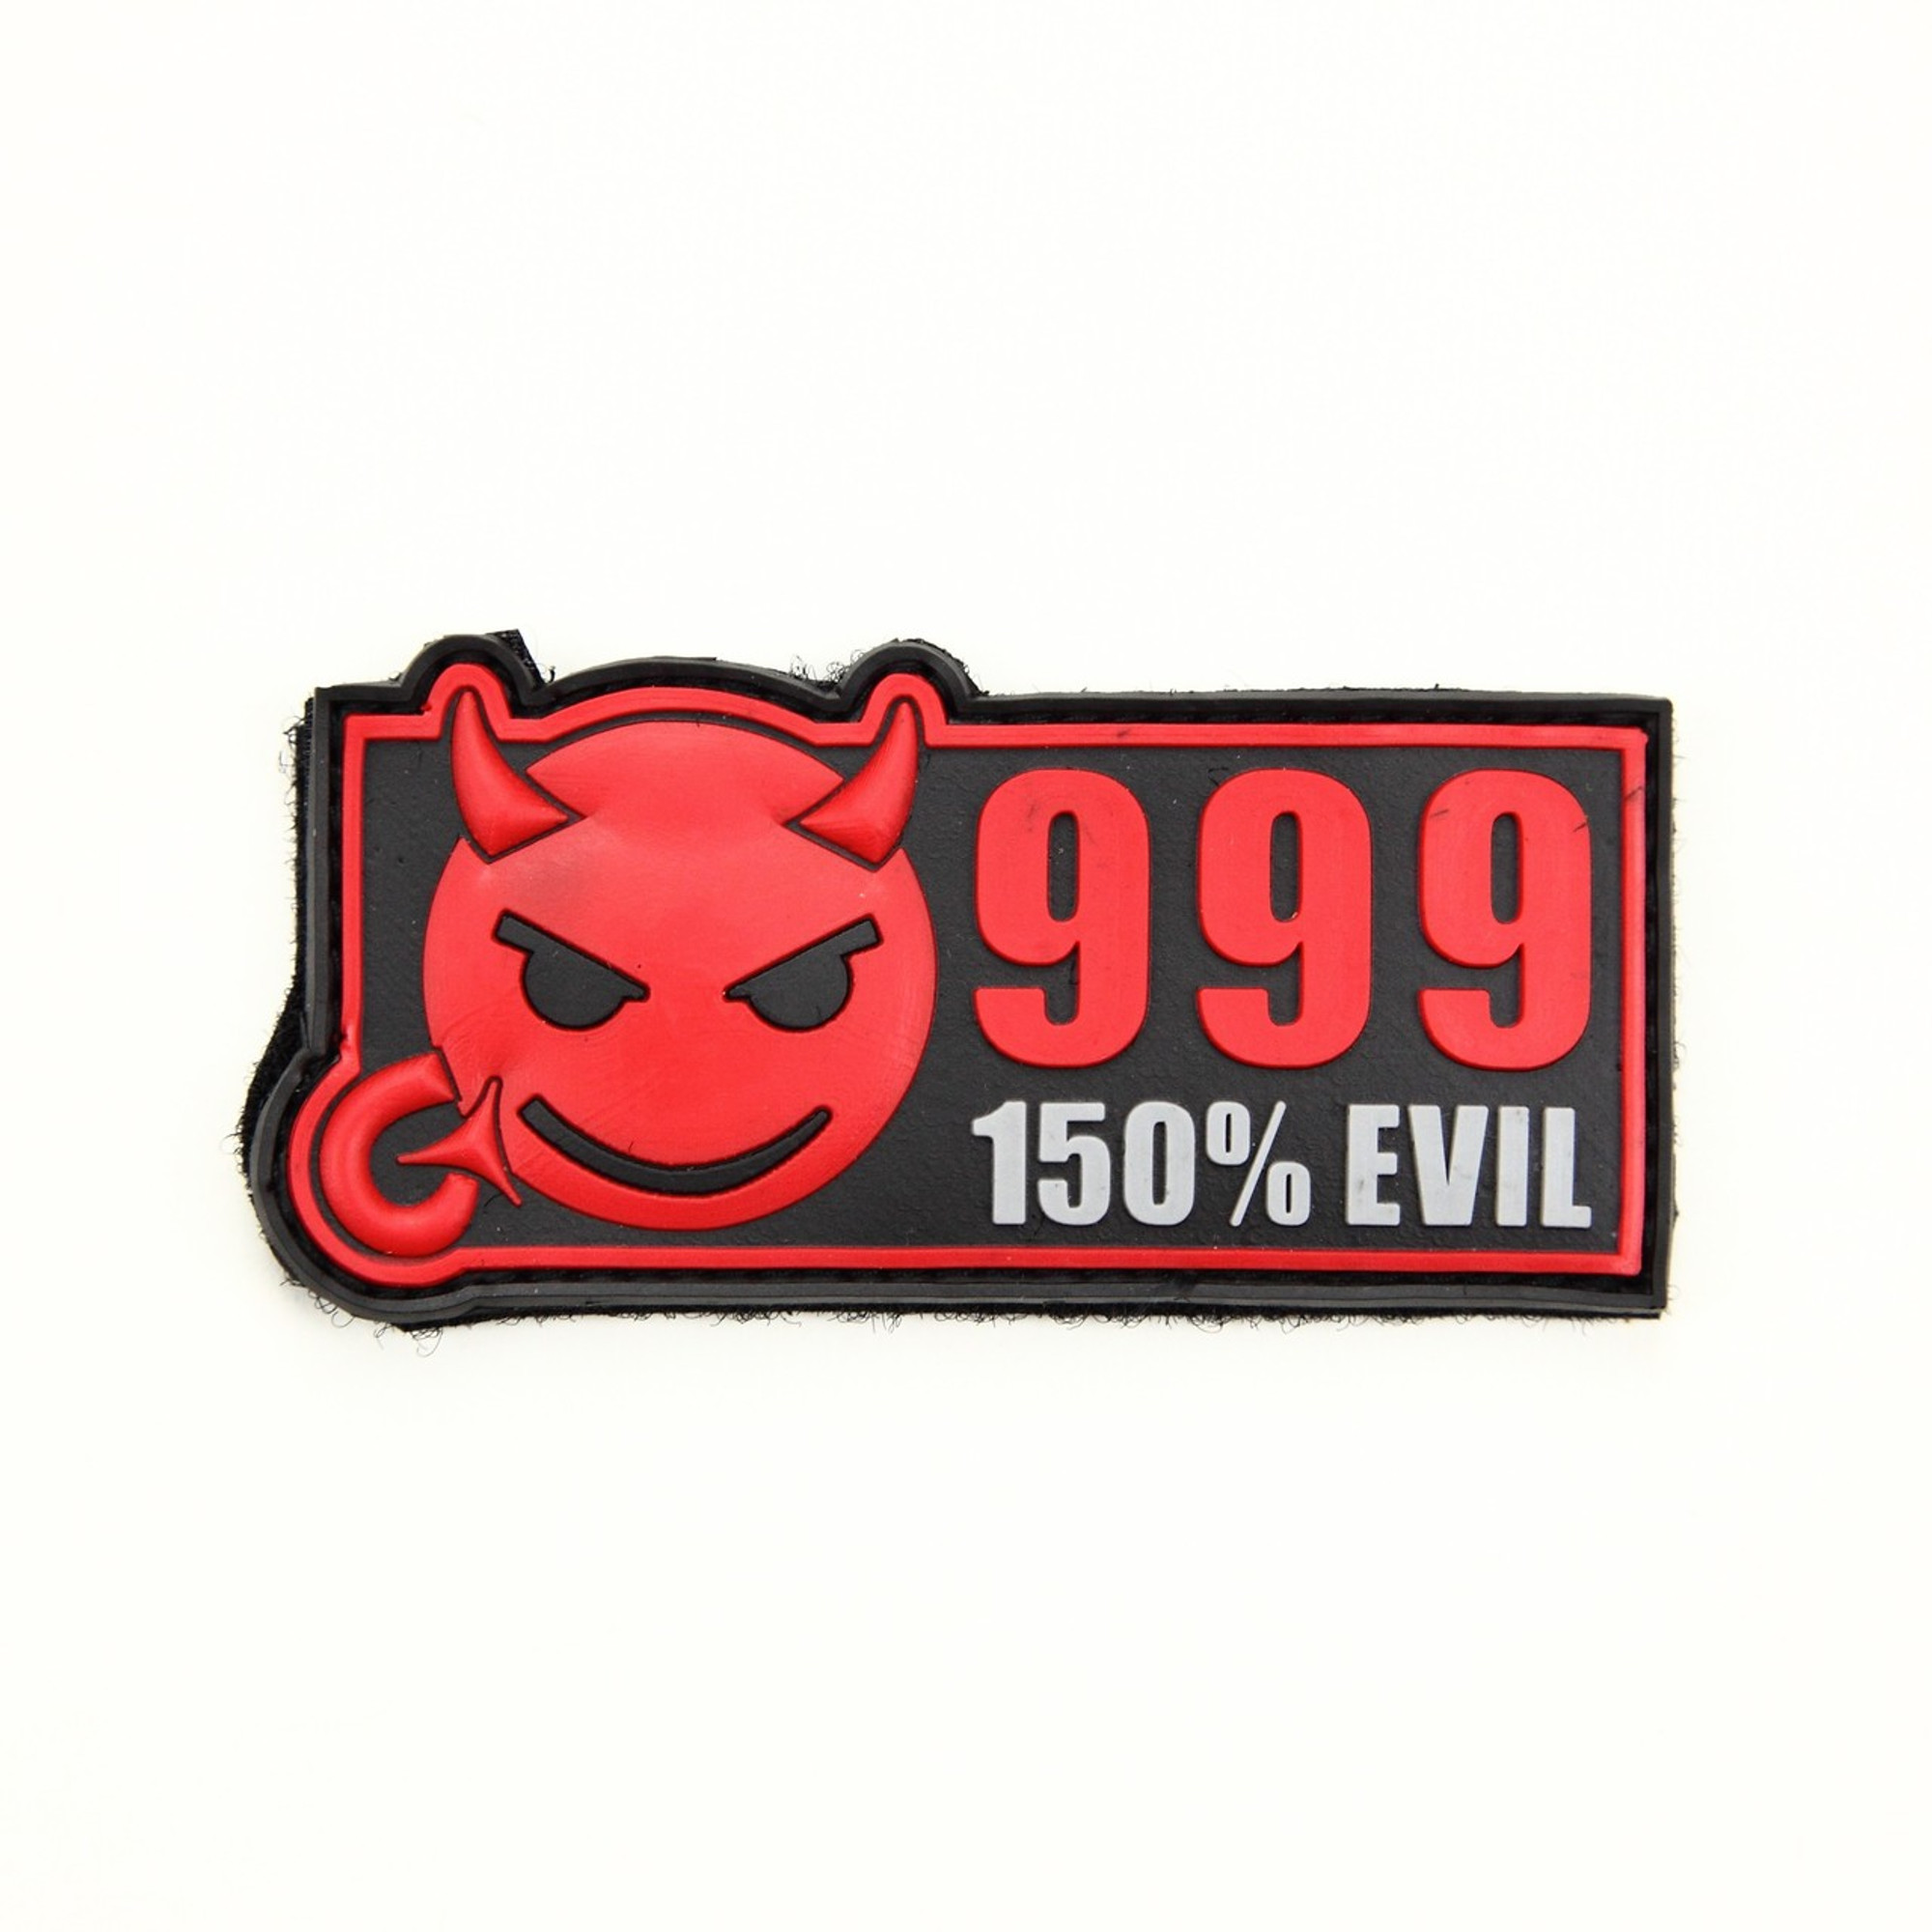 999 150% Evil - Full Colour - Morale Patch